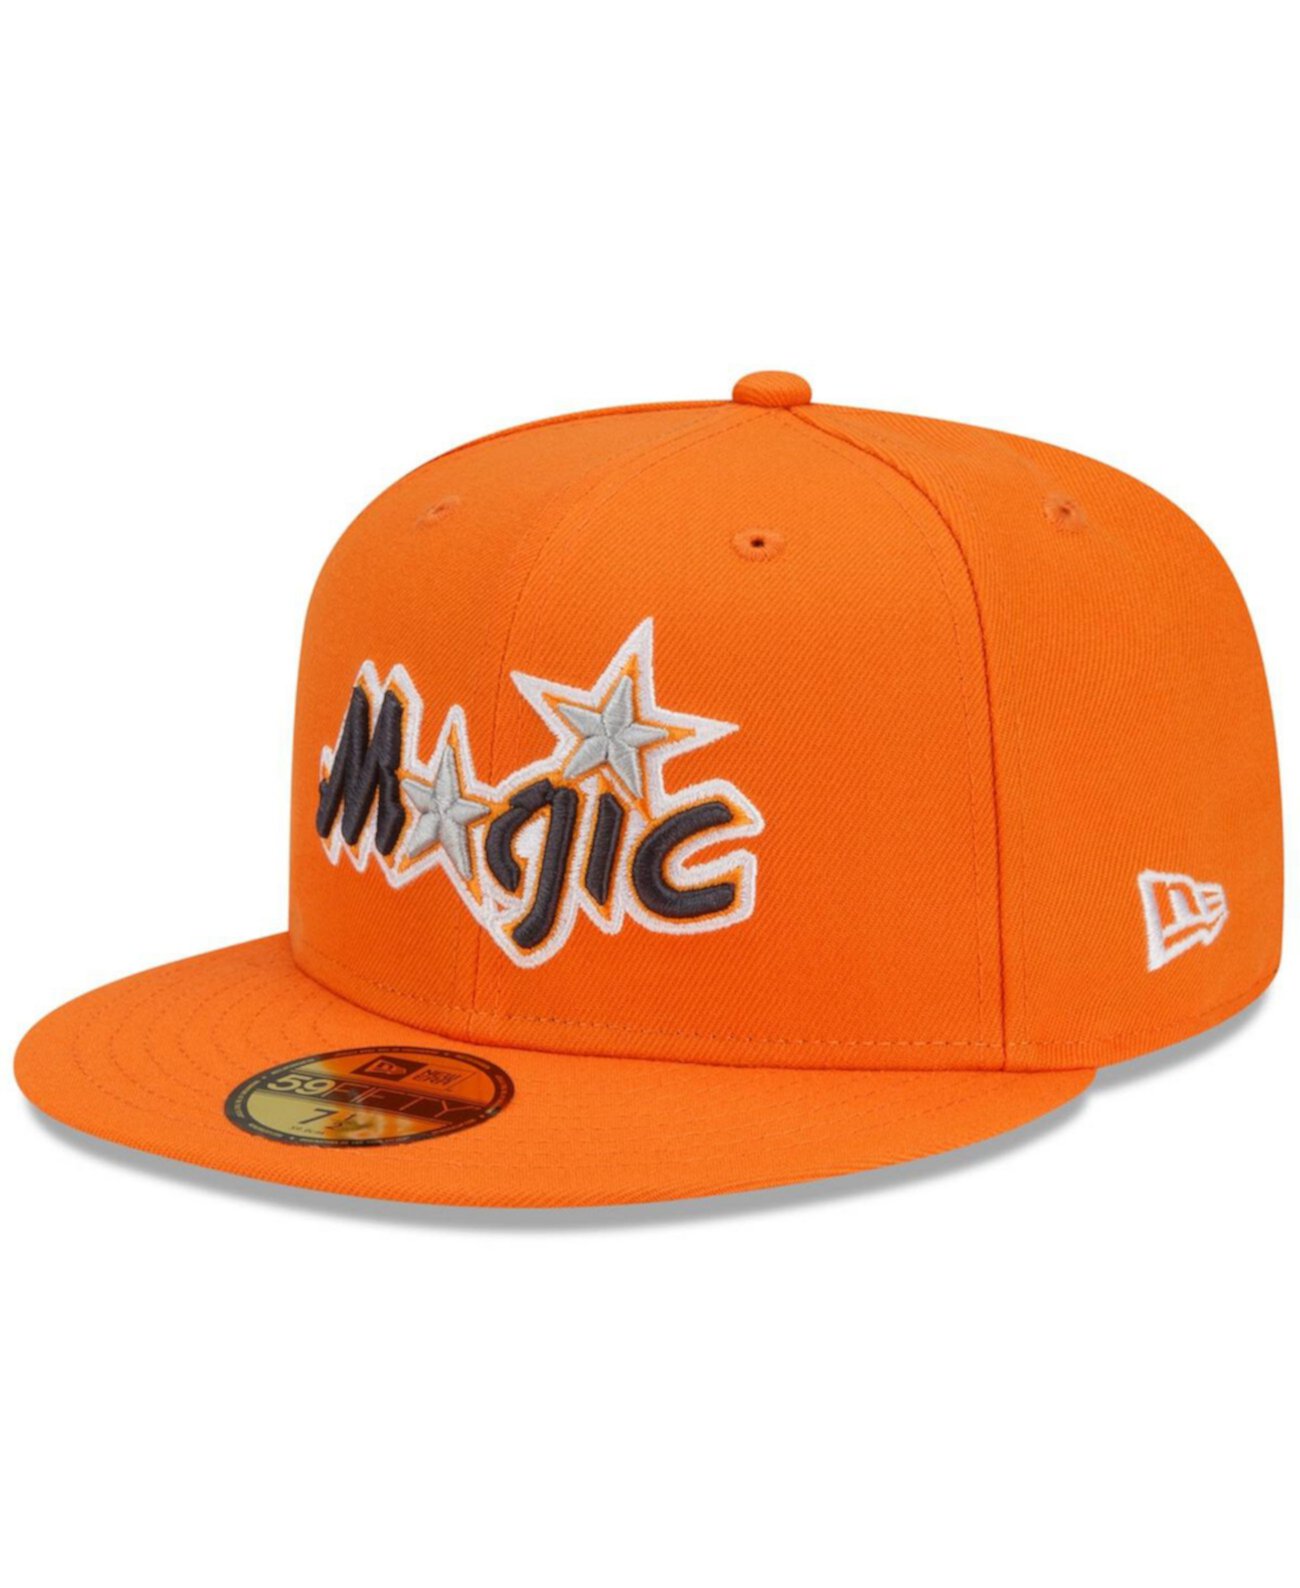 Мужская оранжевая приталенная шляпа Orlando Magic 2021/22 City Edition Alternate 59Fifty New Era